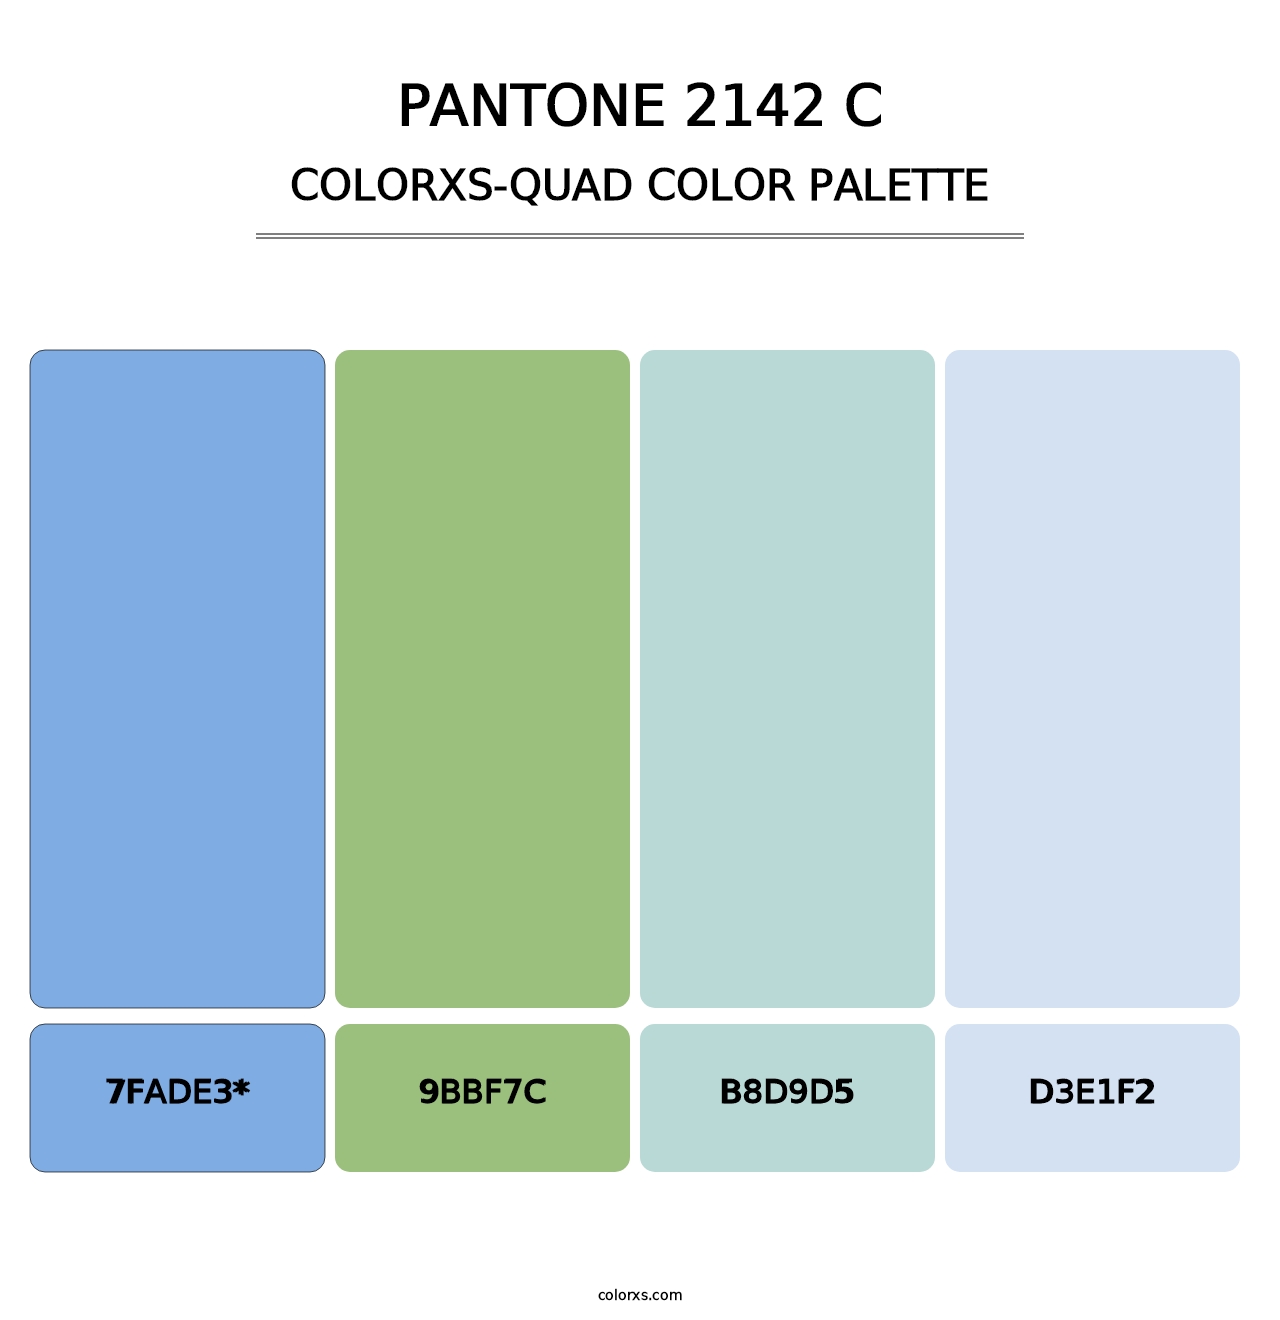 PANTONE 2142 C - Colorxs Quad Palette